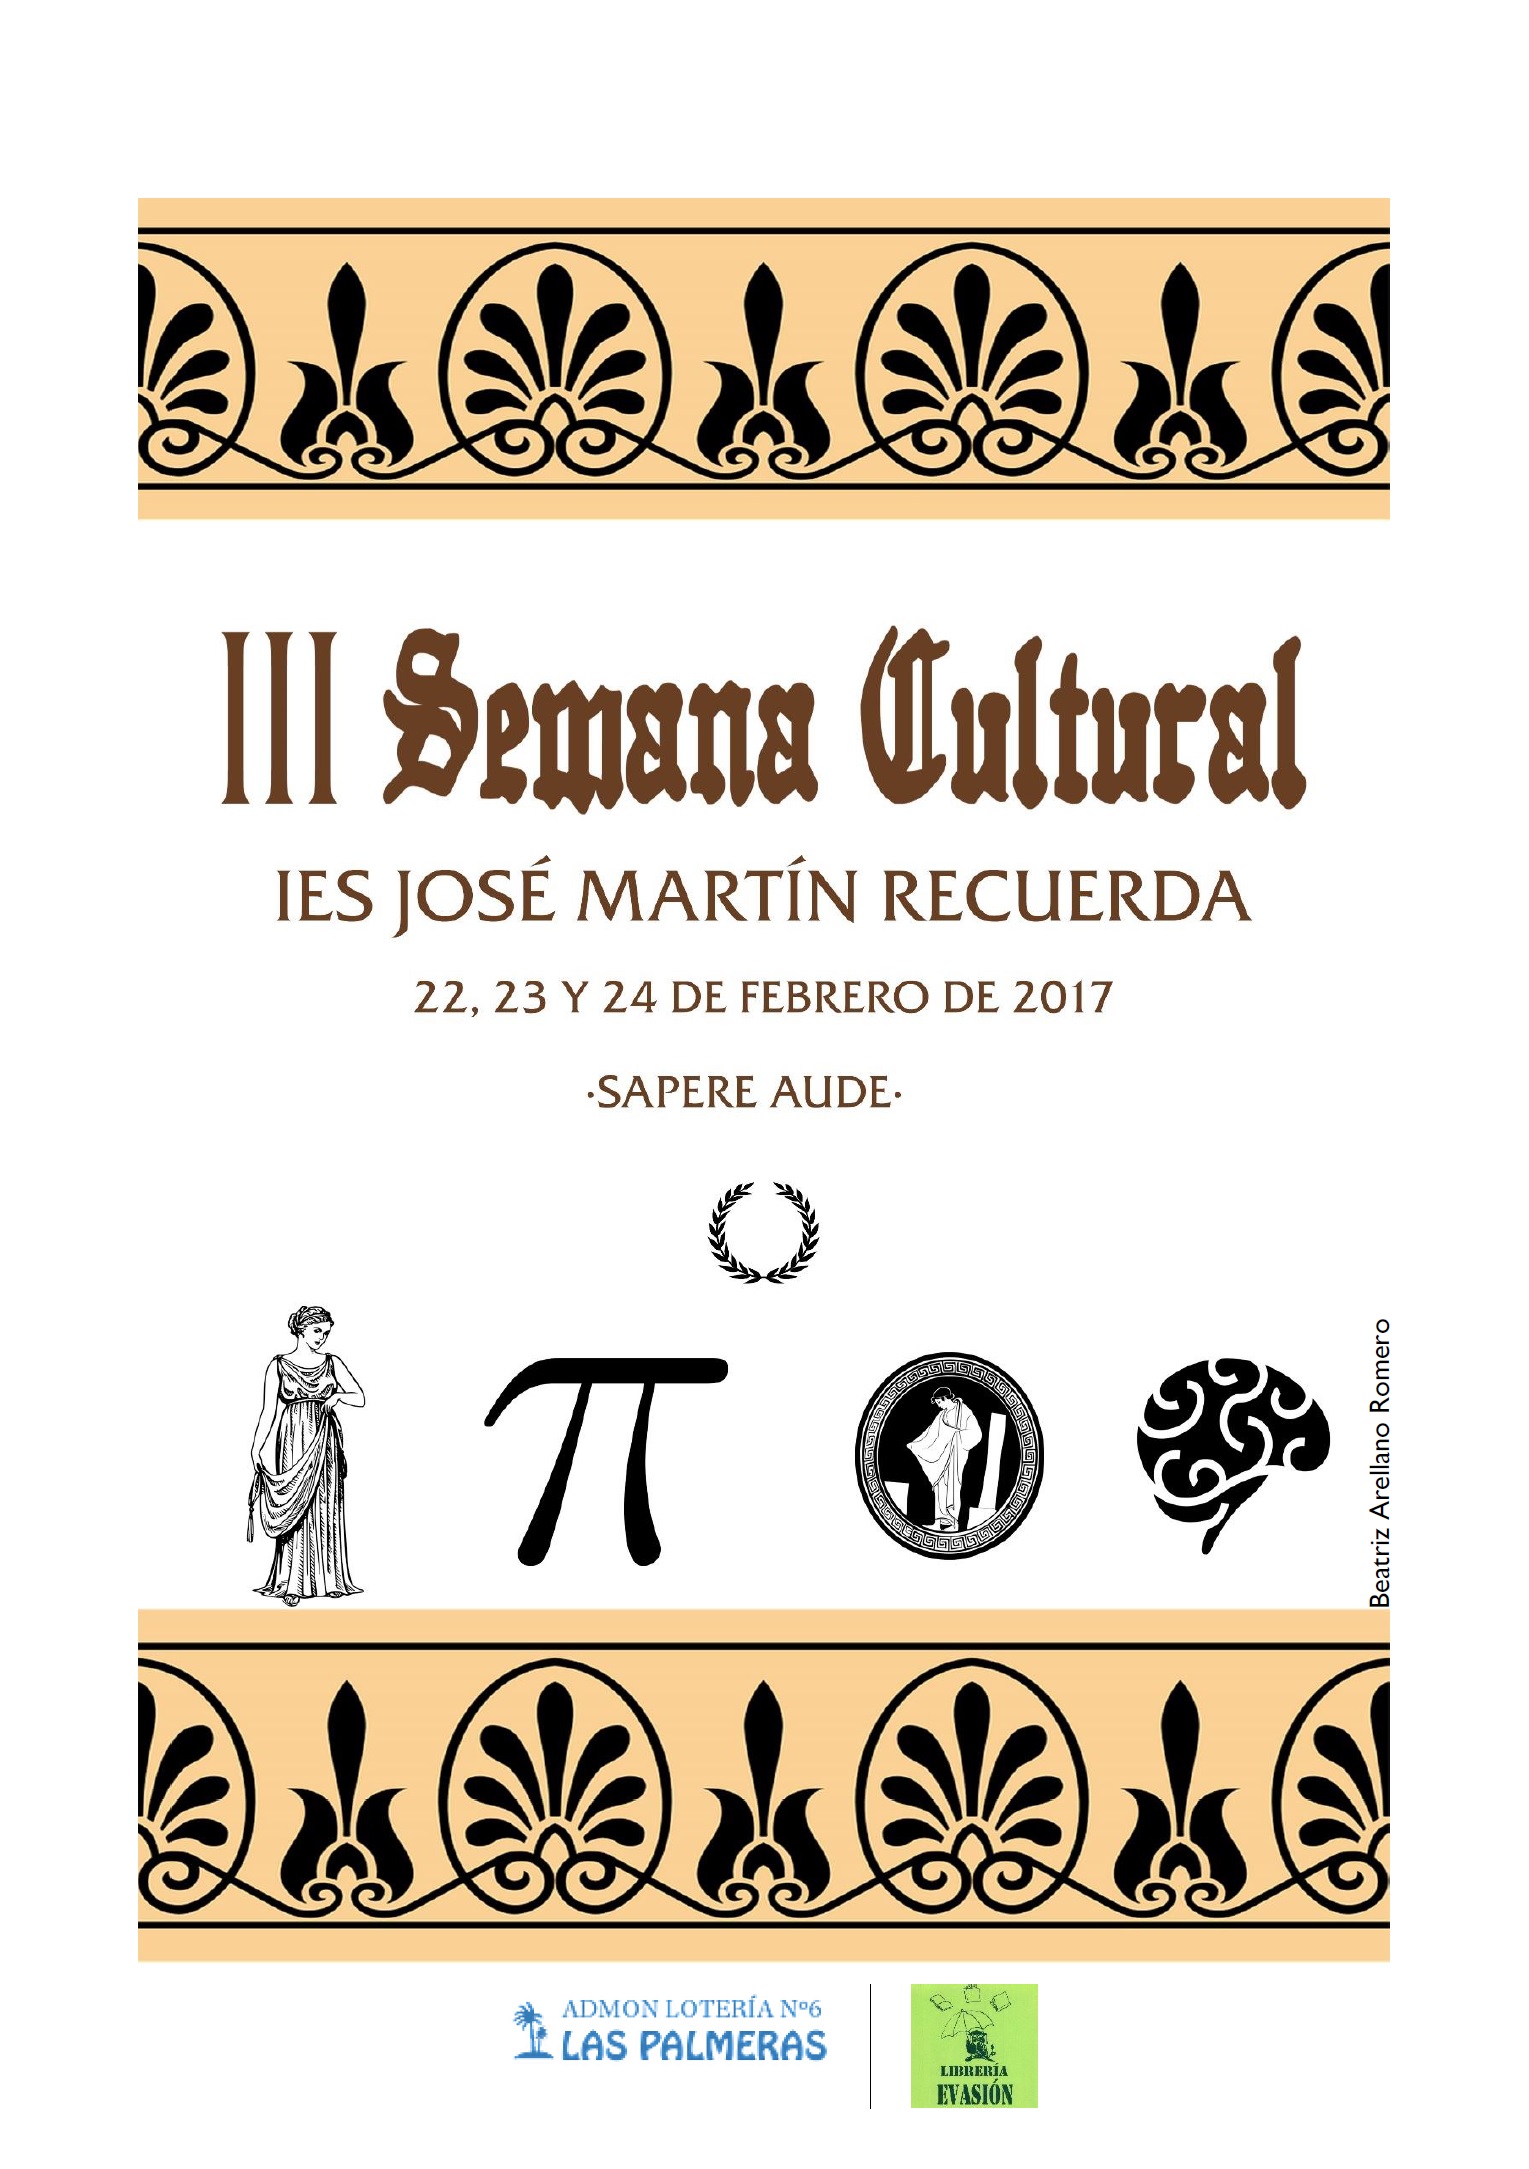 III Semana Cultural IES José Martín Recuerda: 22, 23 Y 24 DE FEBRERO 2017